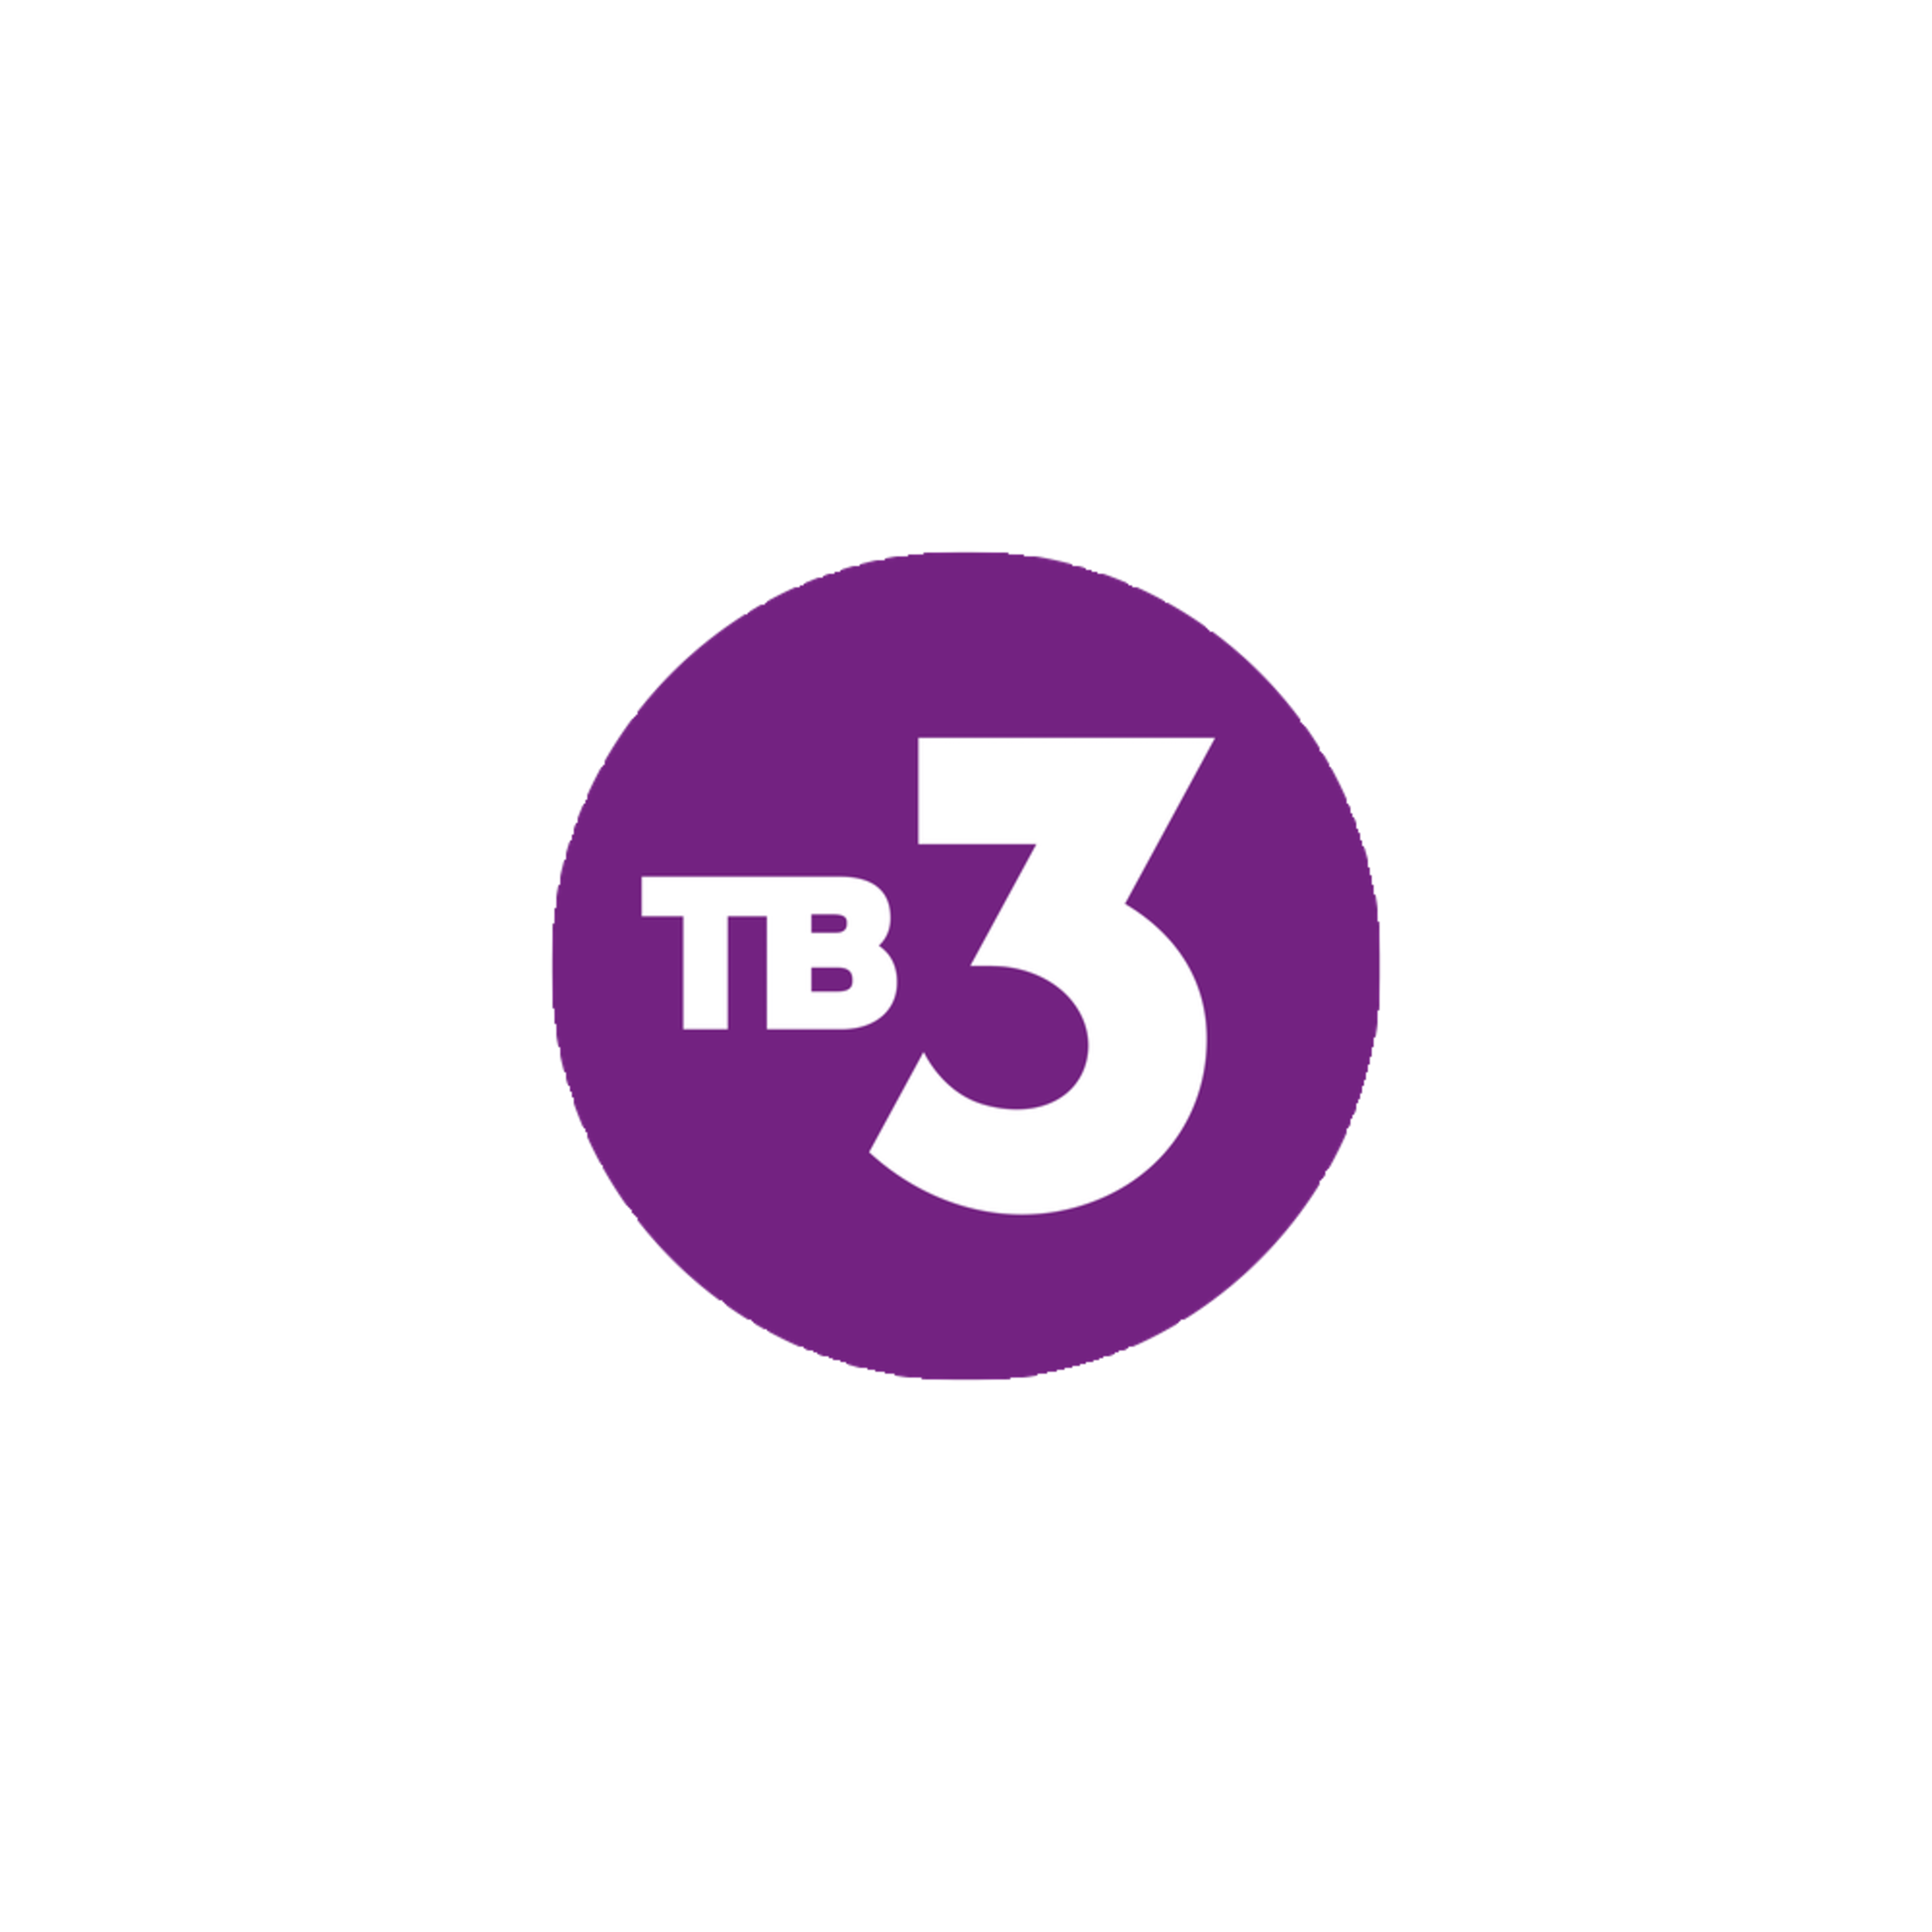 Тв3 логотип. Телеканал тв3. Логотип канала тв3. 3 Канал. Тв3 все телепрограммы